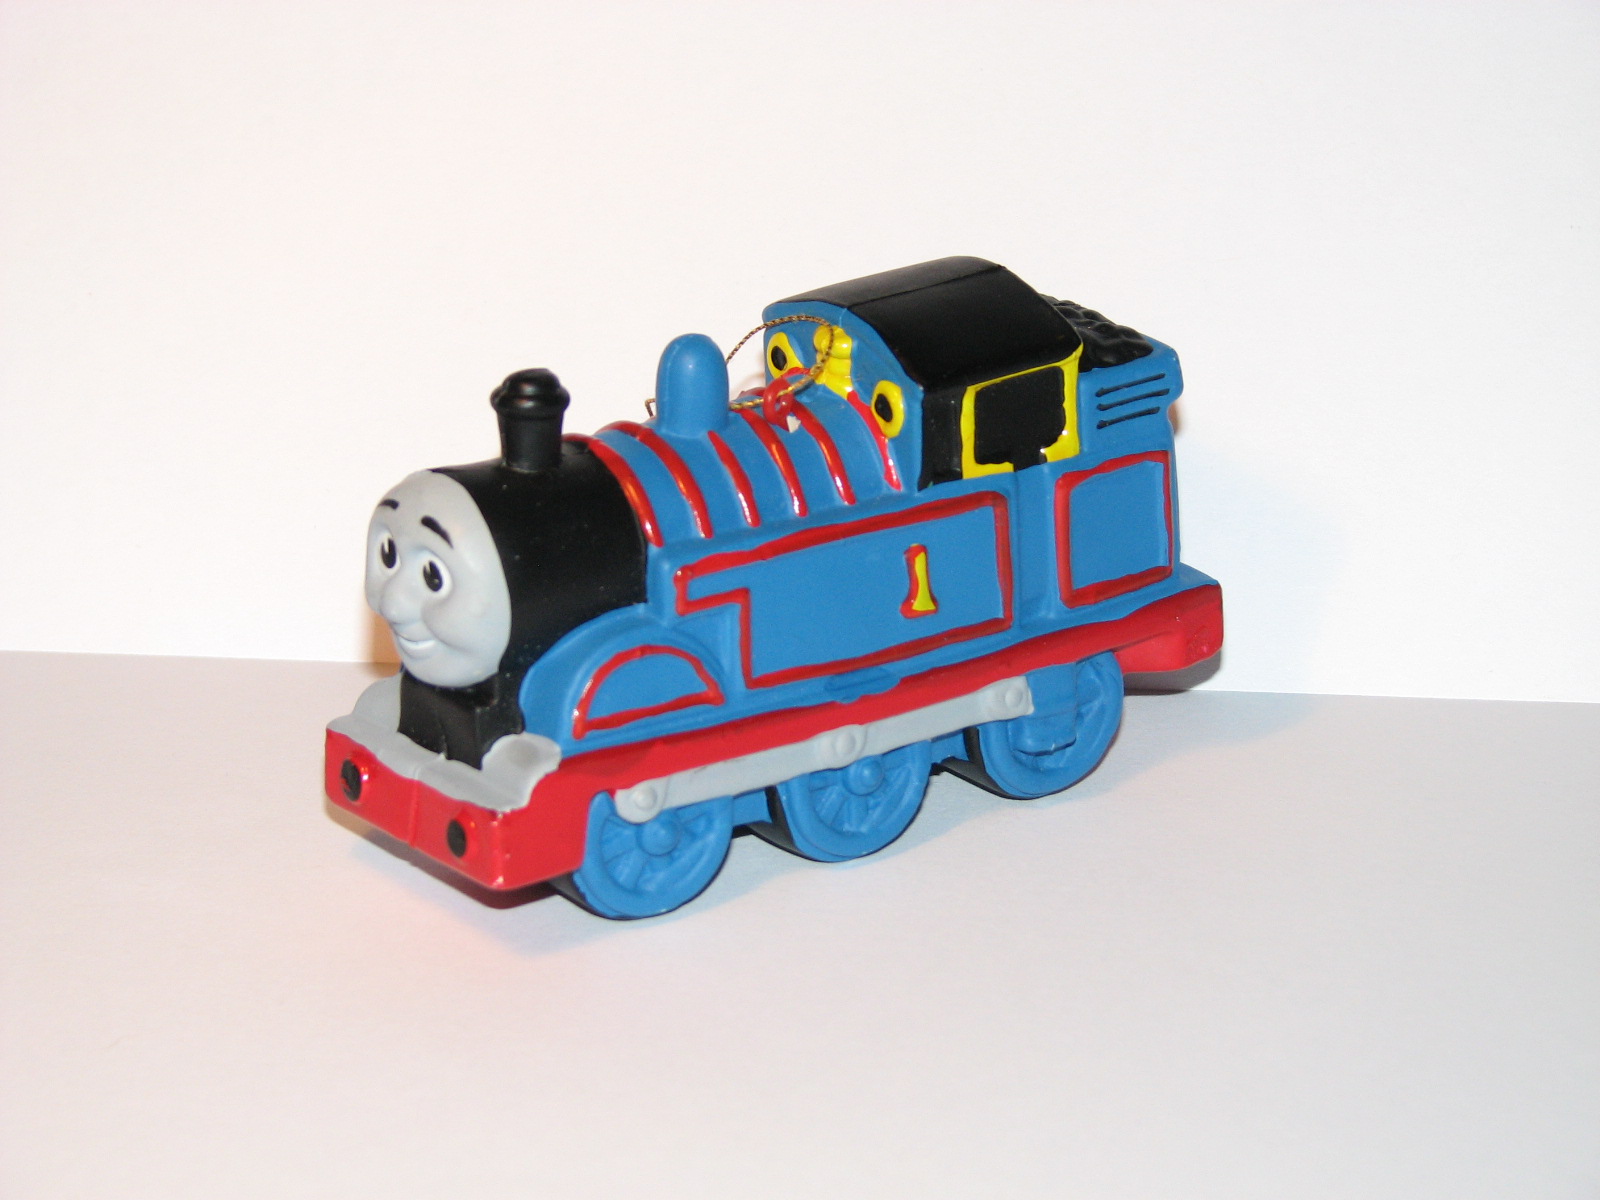 [Thomas+the+Tank+Engine.jpg]